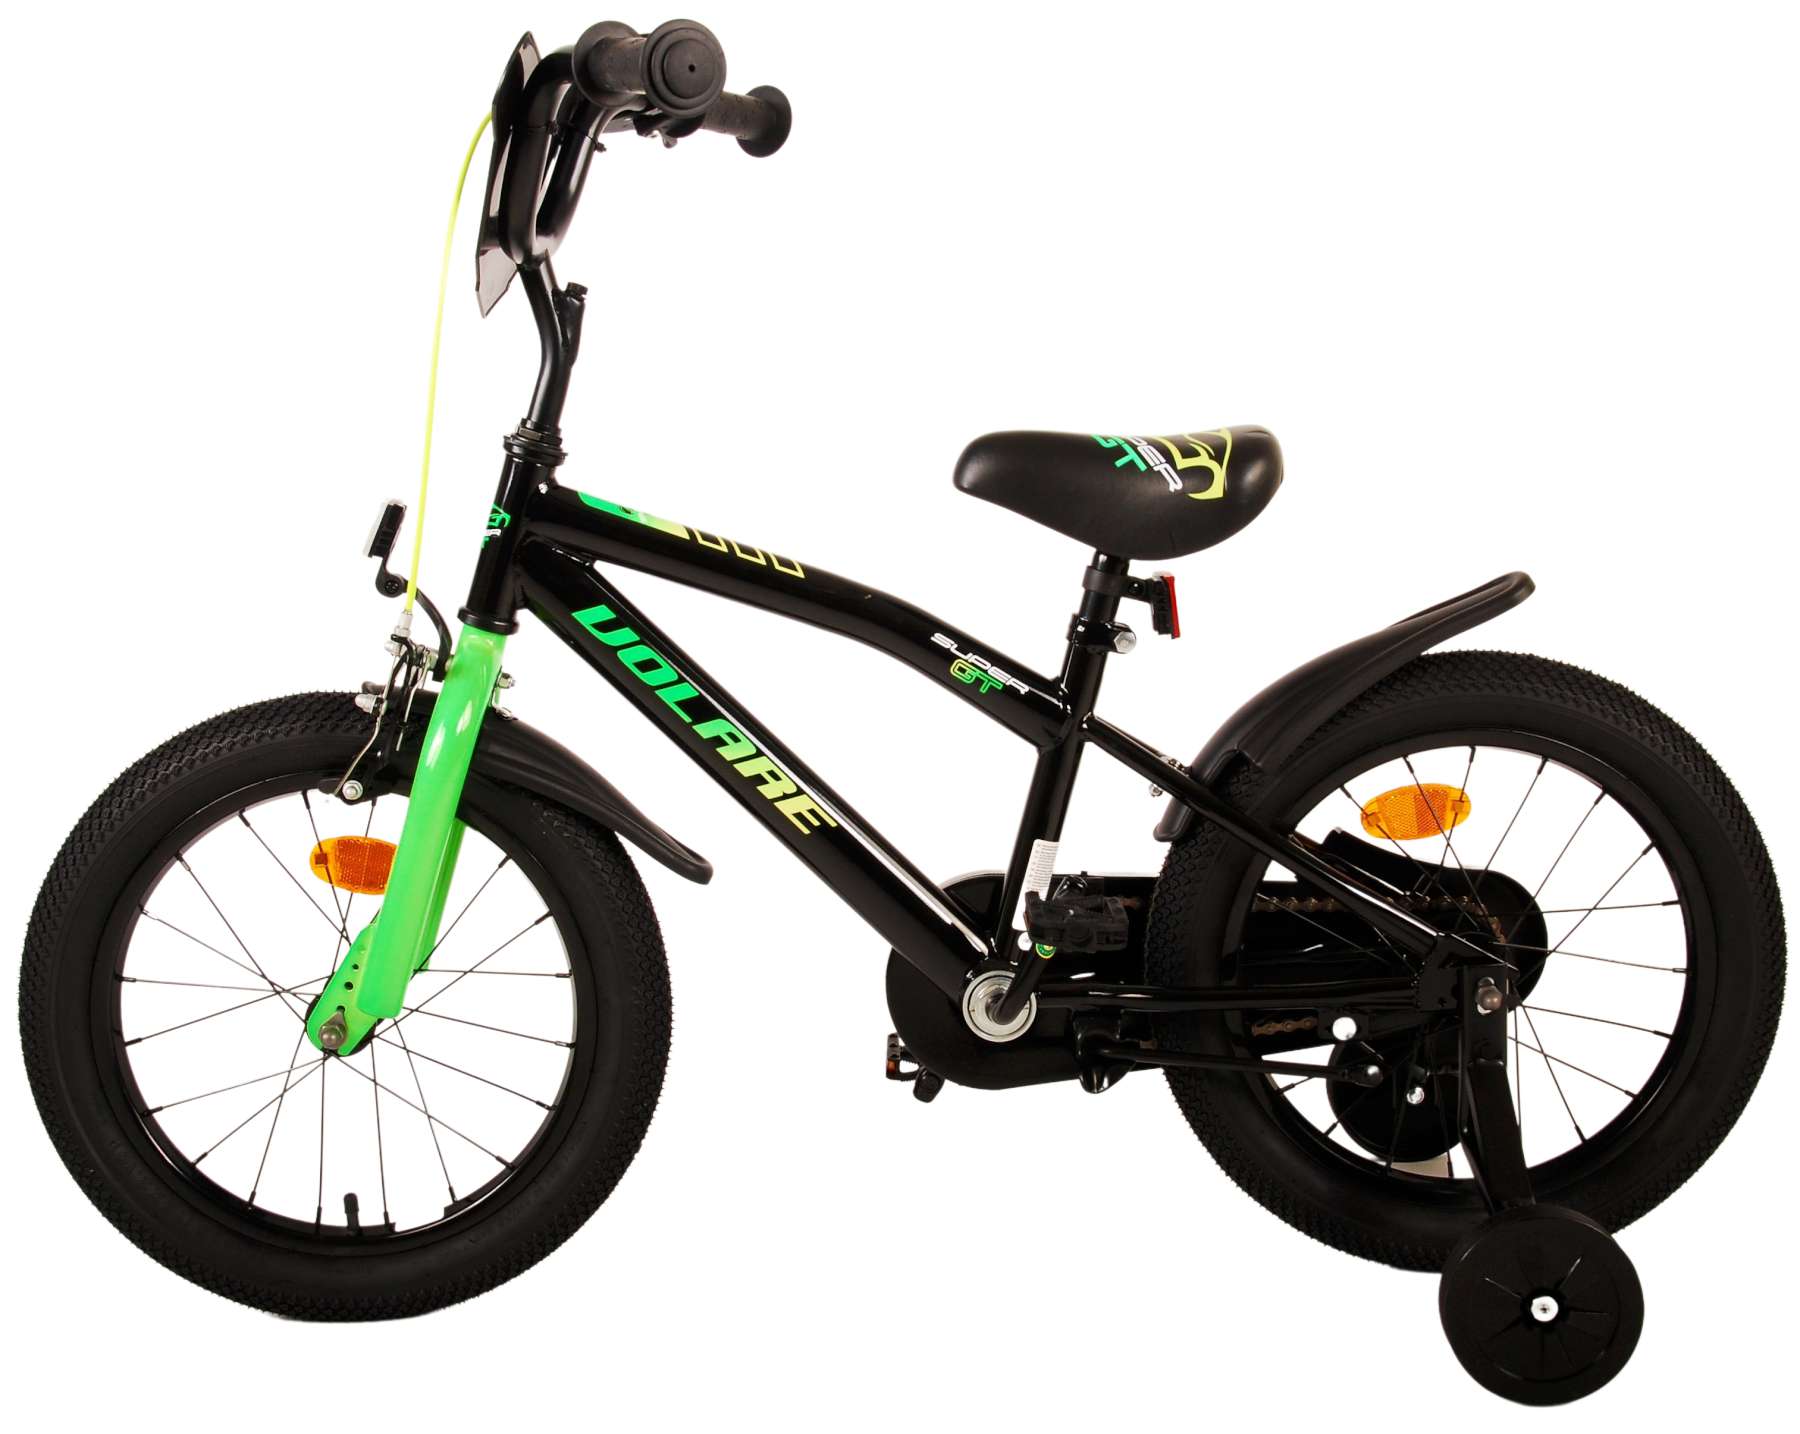 Kinderfahrrad Super GT Fahrrad für Jungen 16 Zoll Kinderrad in Grün